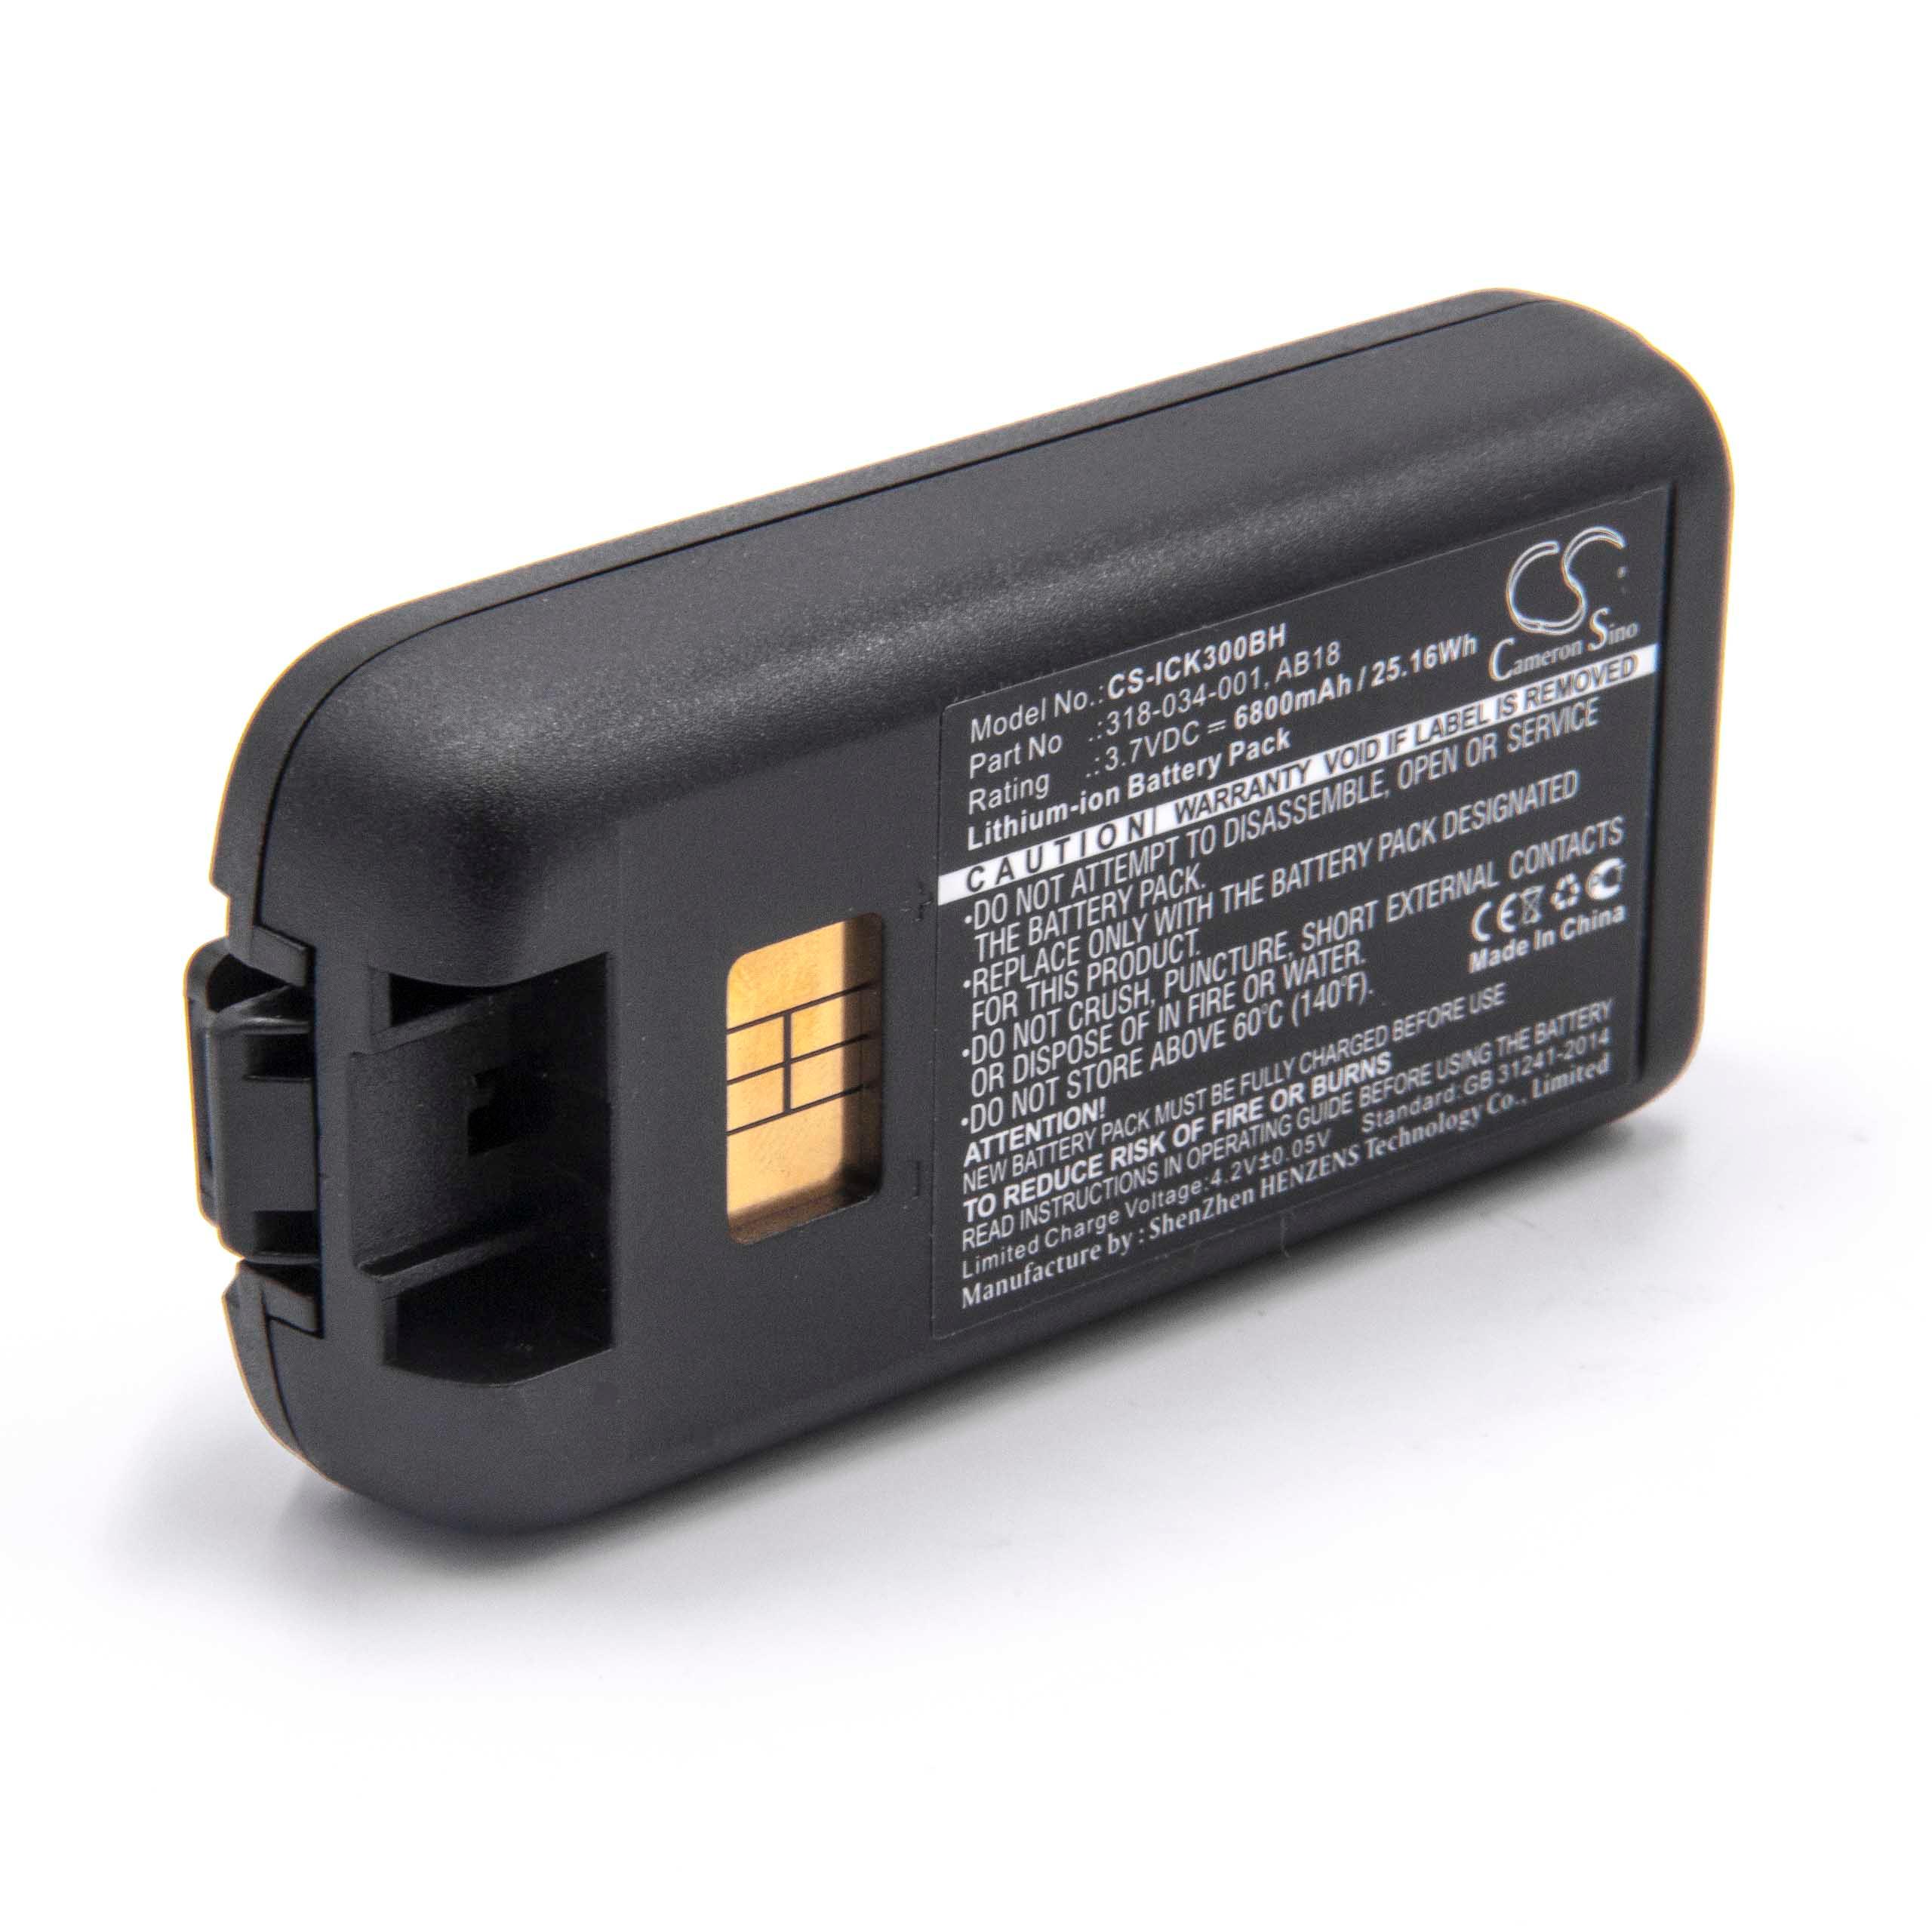 Batteria per lettore di codici a barre, POS sostituisce Intermec 318-033-001 Intermec - 6800mAh 3,7V Li-Ion